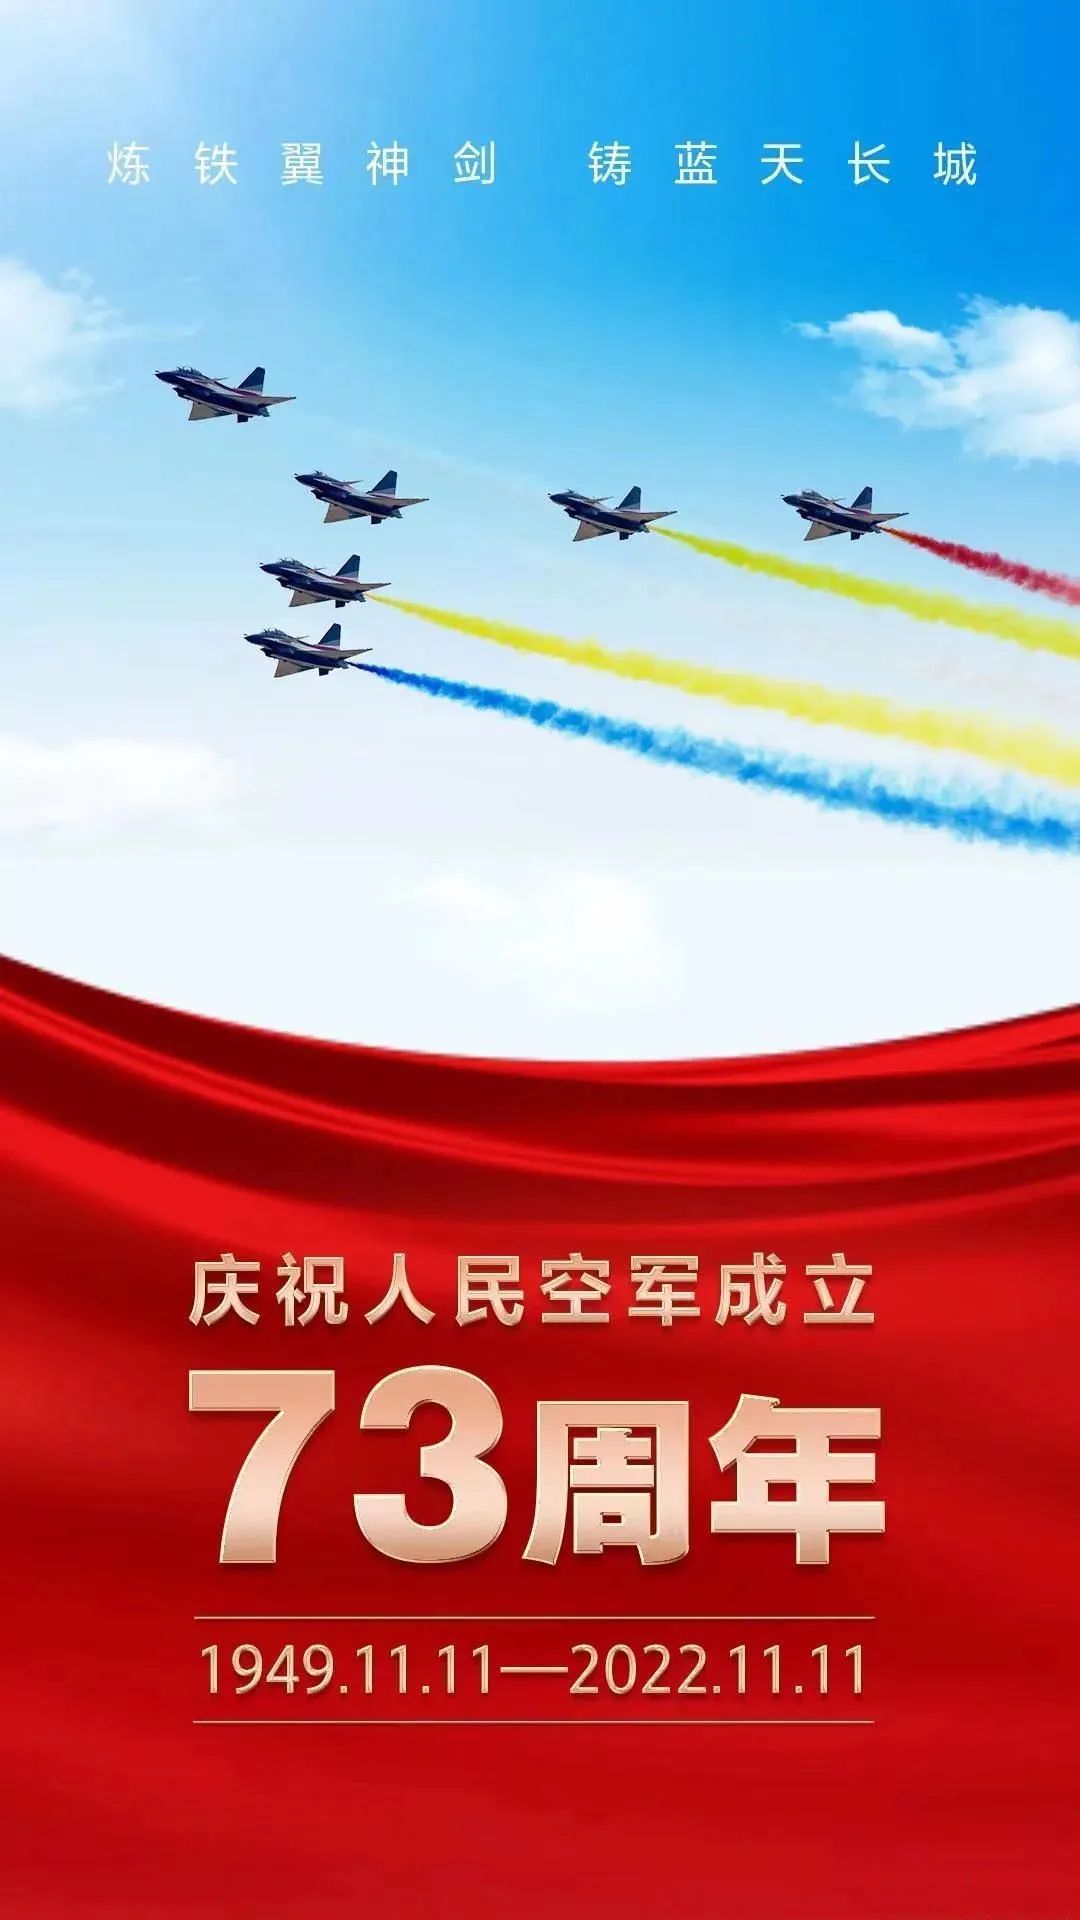 向天空卫士致敬——庆祝人民空军成立73周年(图1)